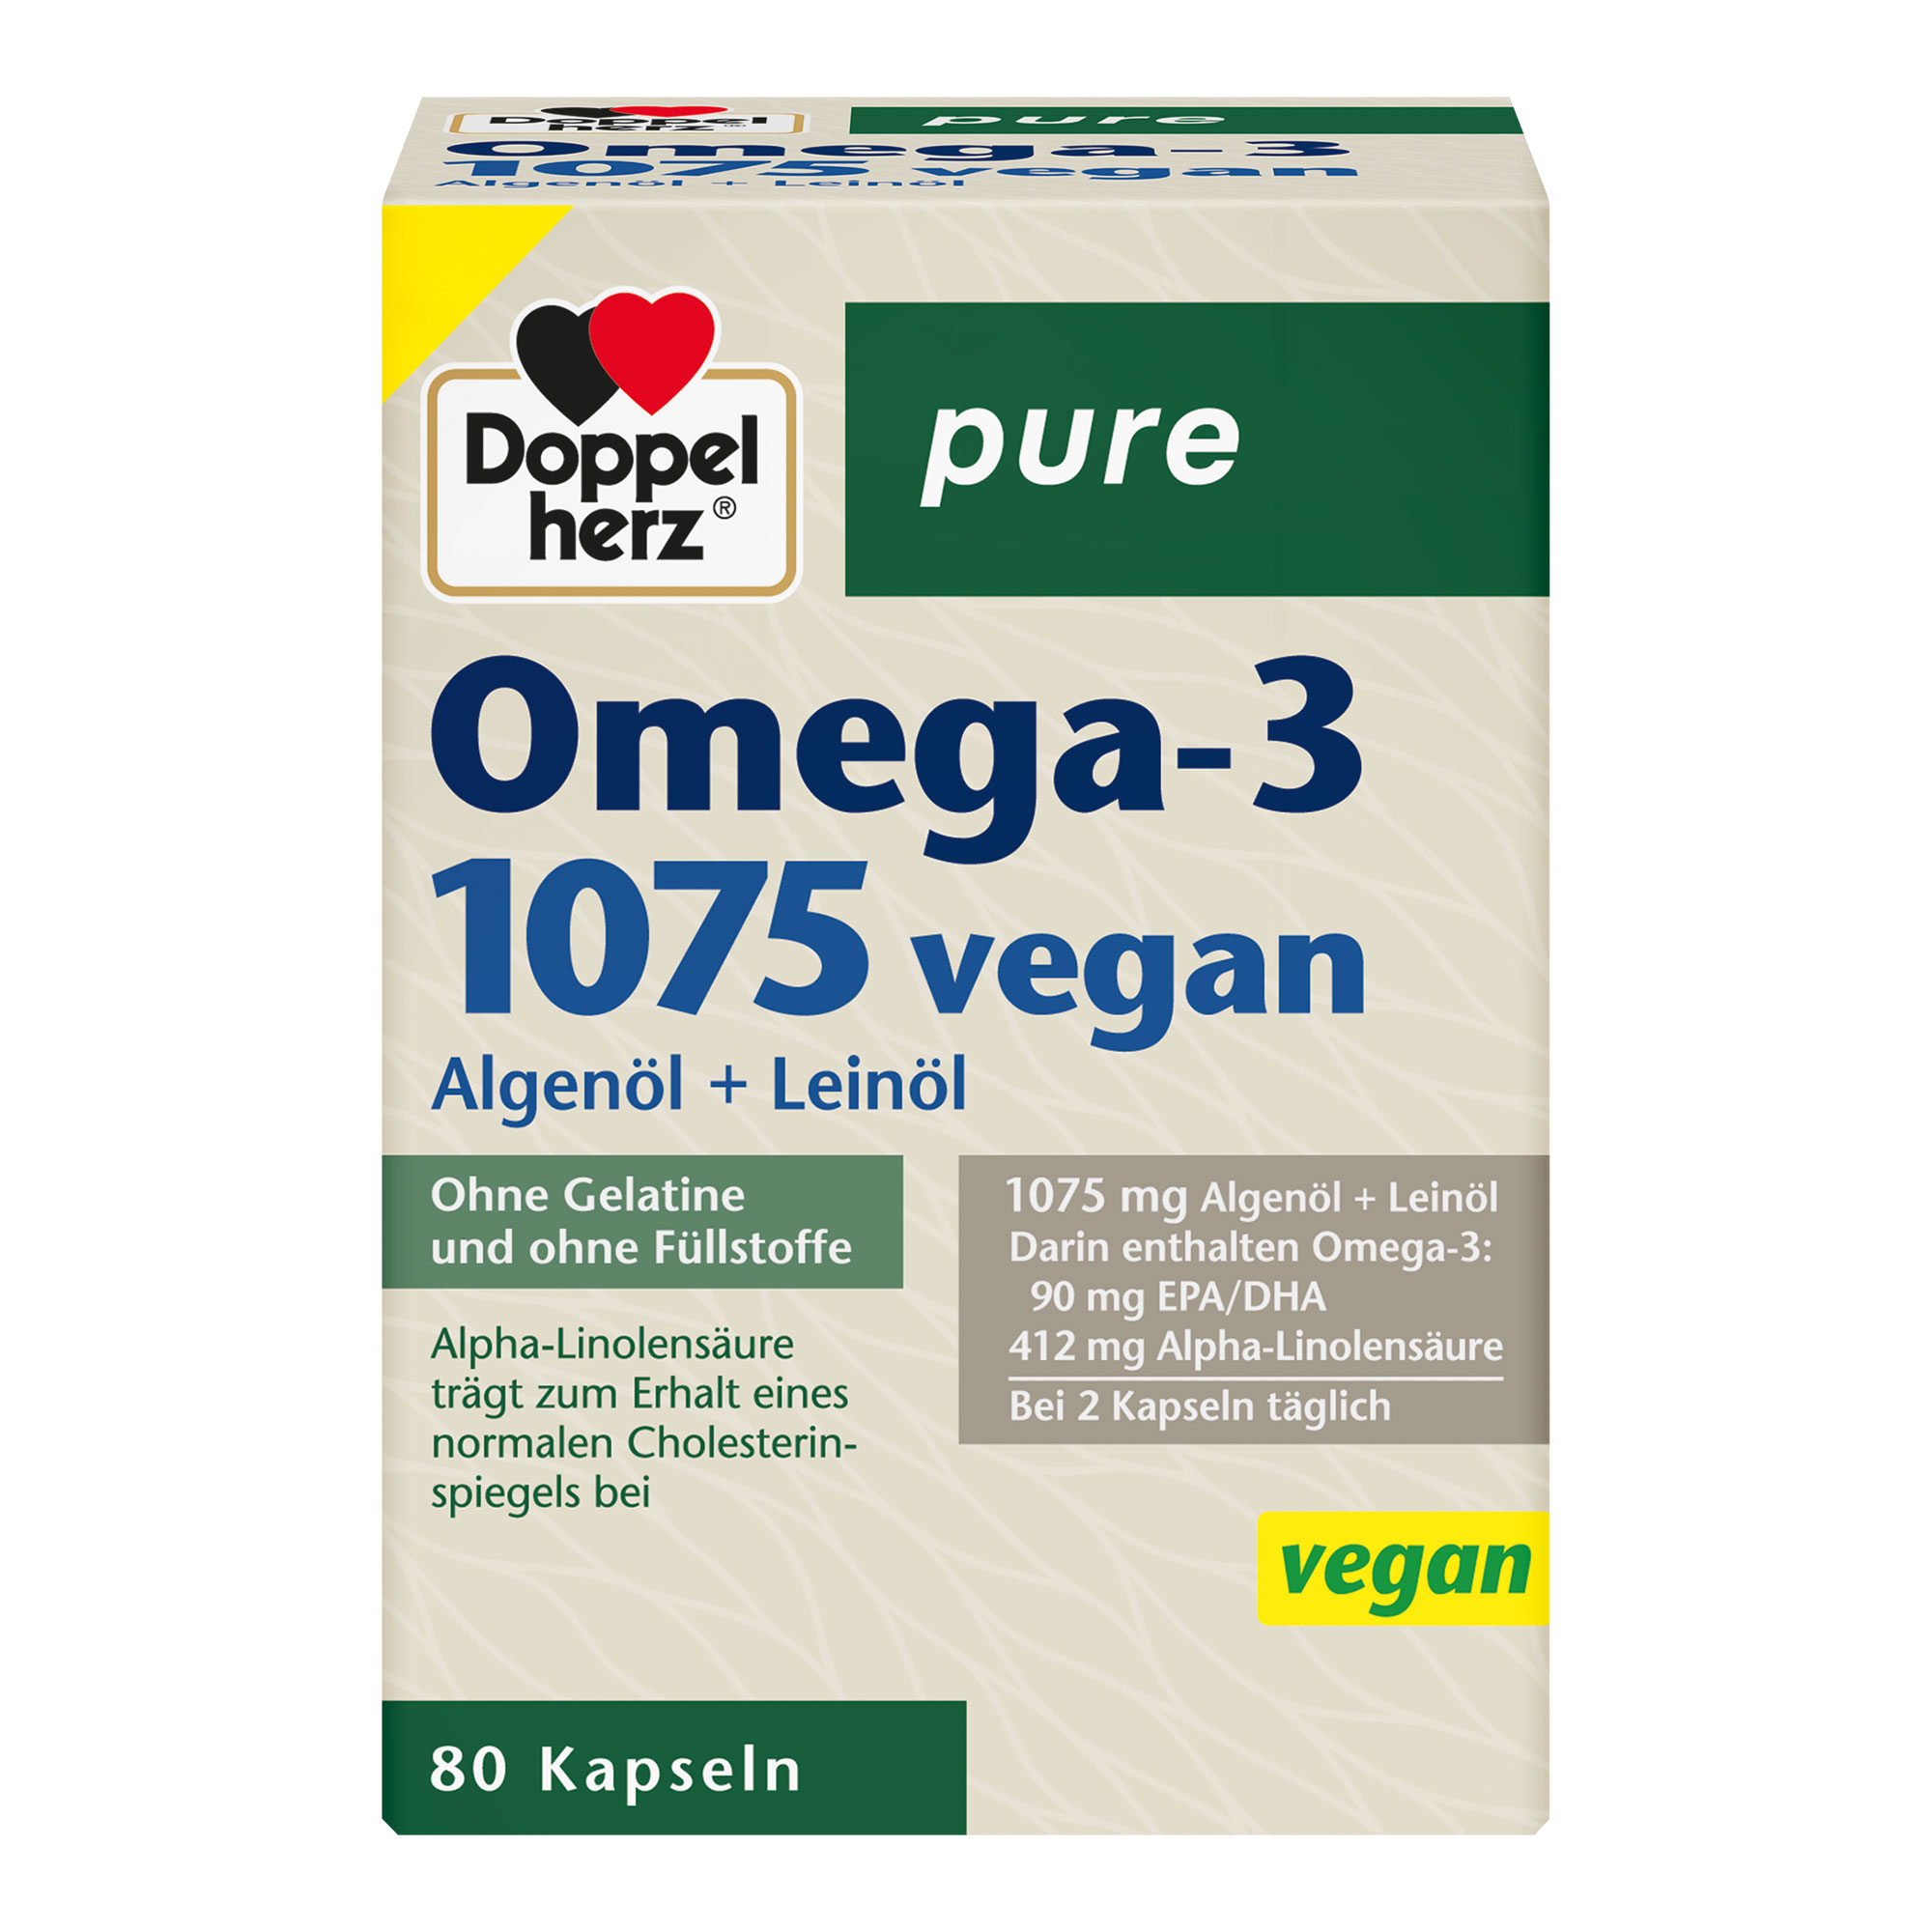 Nahrungsergänzungsmittel mit Omega-3-Fettsäuren aus Algen- und Leinöl sowie Vitamin E.